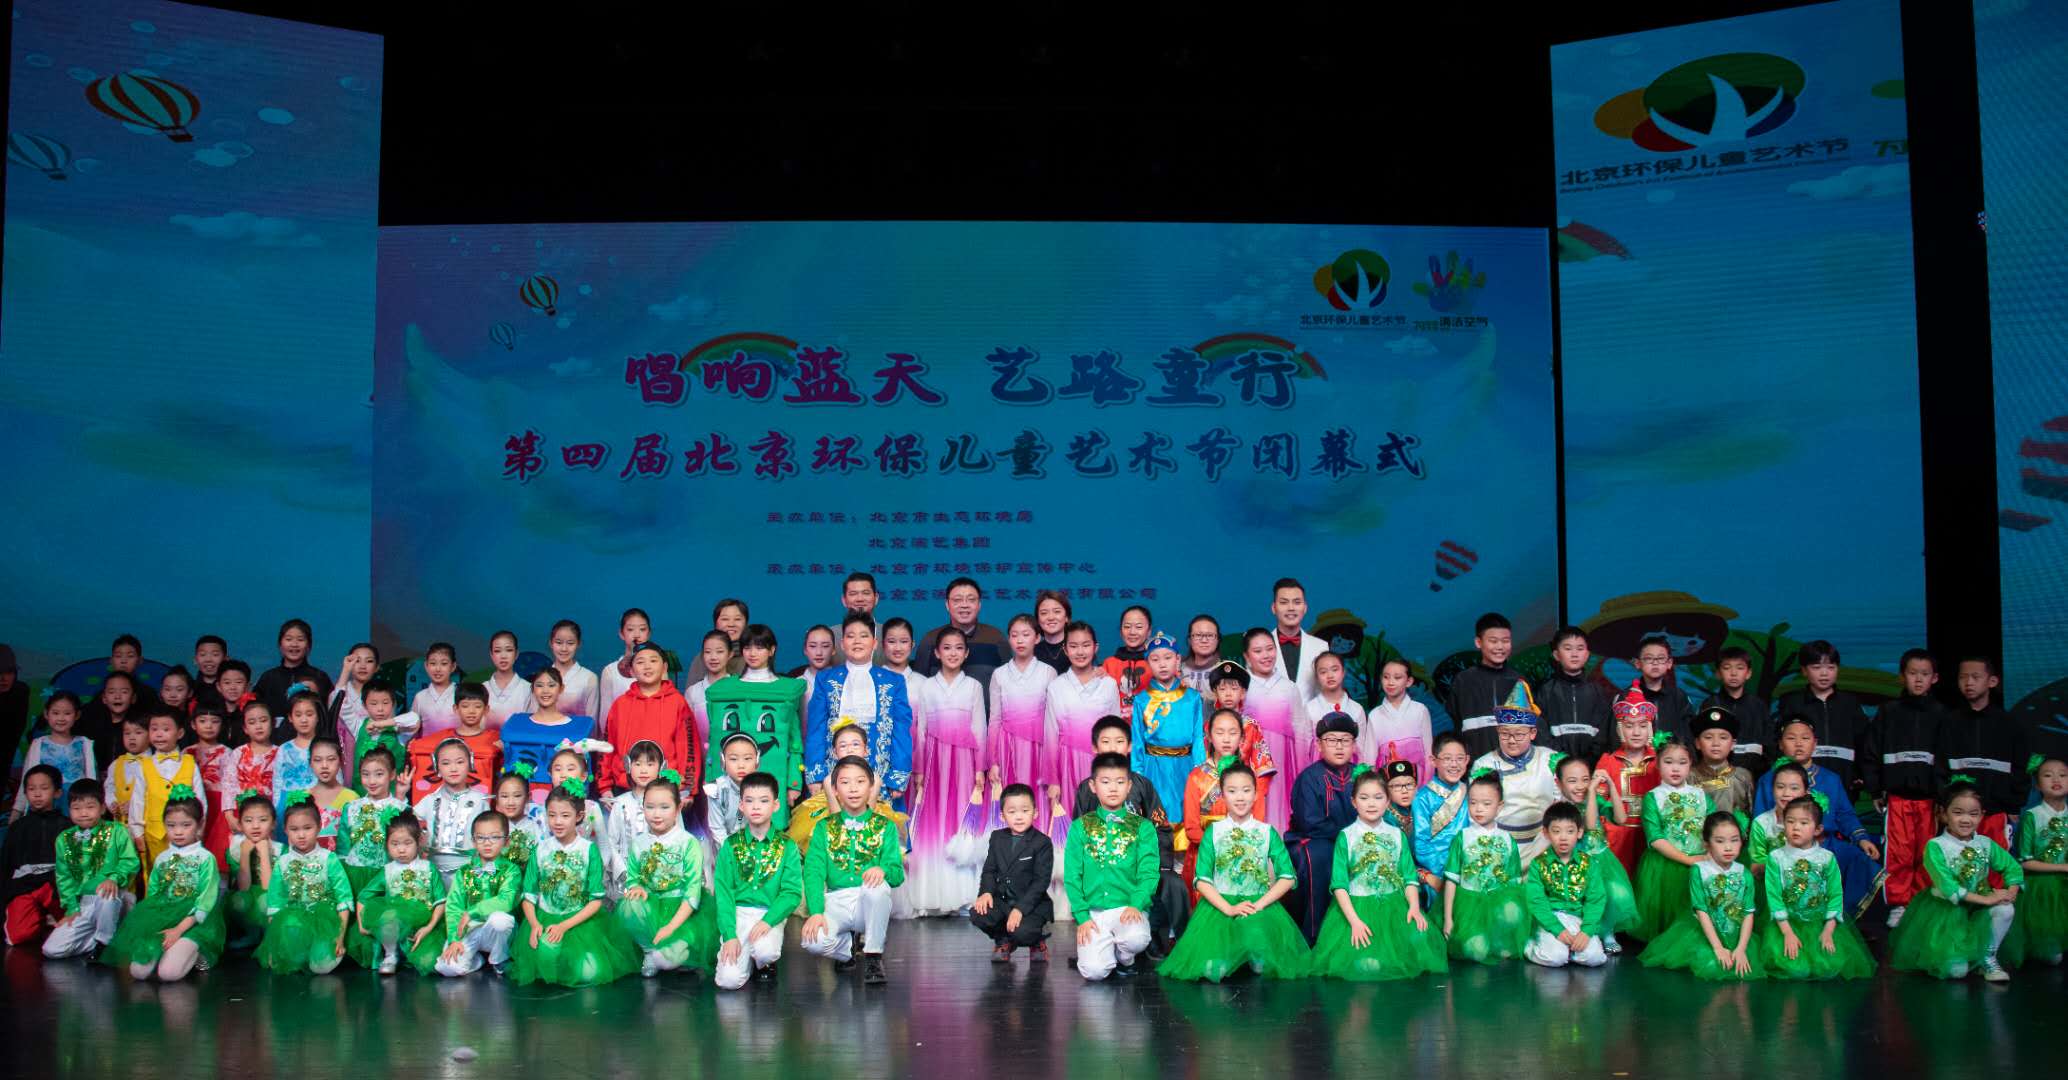 携手搭建公益平台 培养时代环保新人 北京环保儿童艺术节助力建设美丽中国